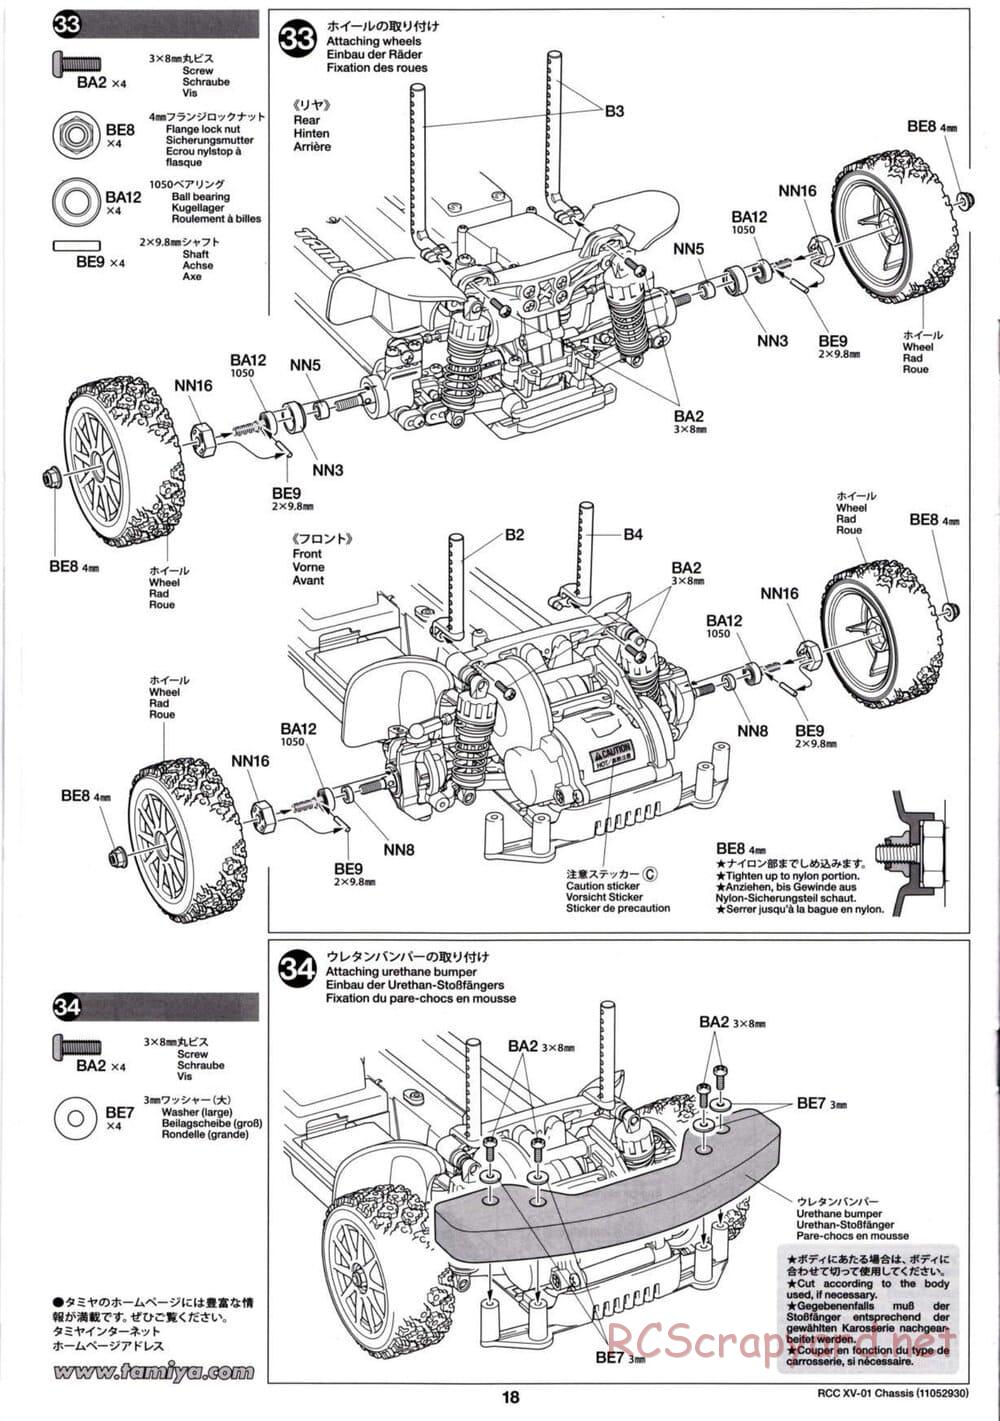 Tamiya - XV-01 Chassis - Manual - Page 19